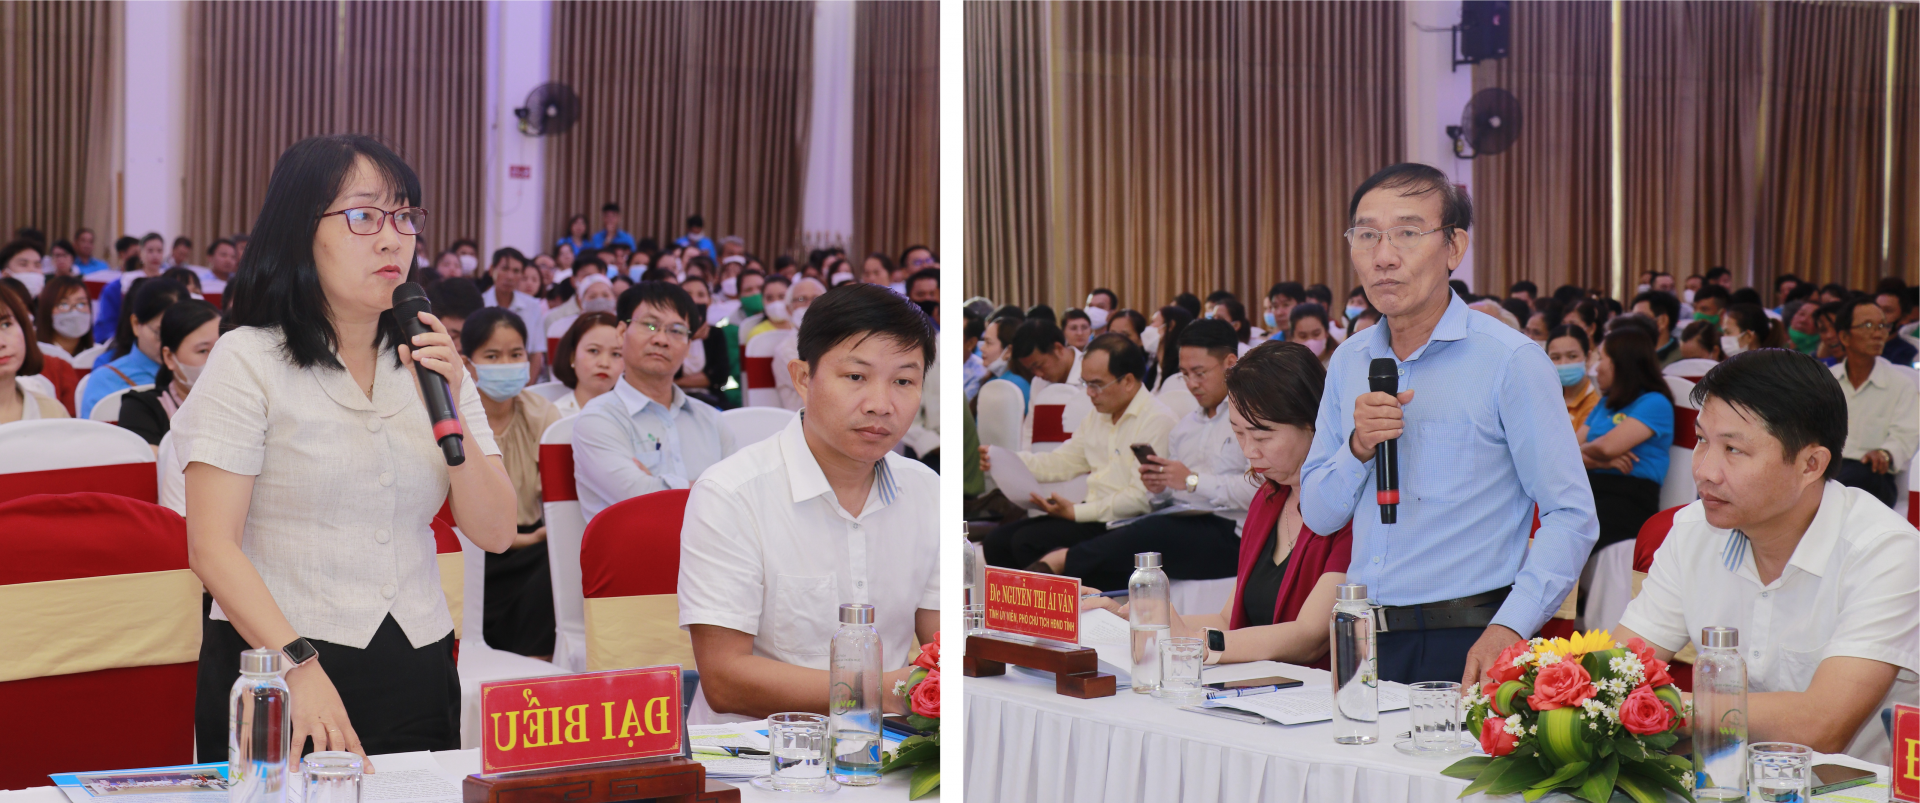 Thừa Thiên Huế: Công nhân lao động đối thoại với đại biểu Quốc hội và lãnh đạo tỉnh